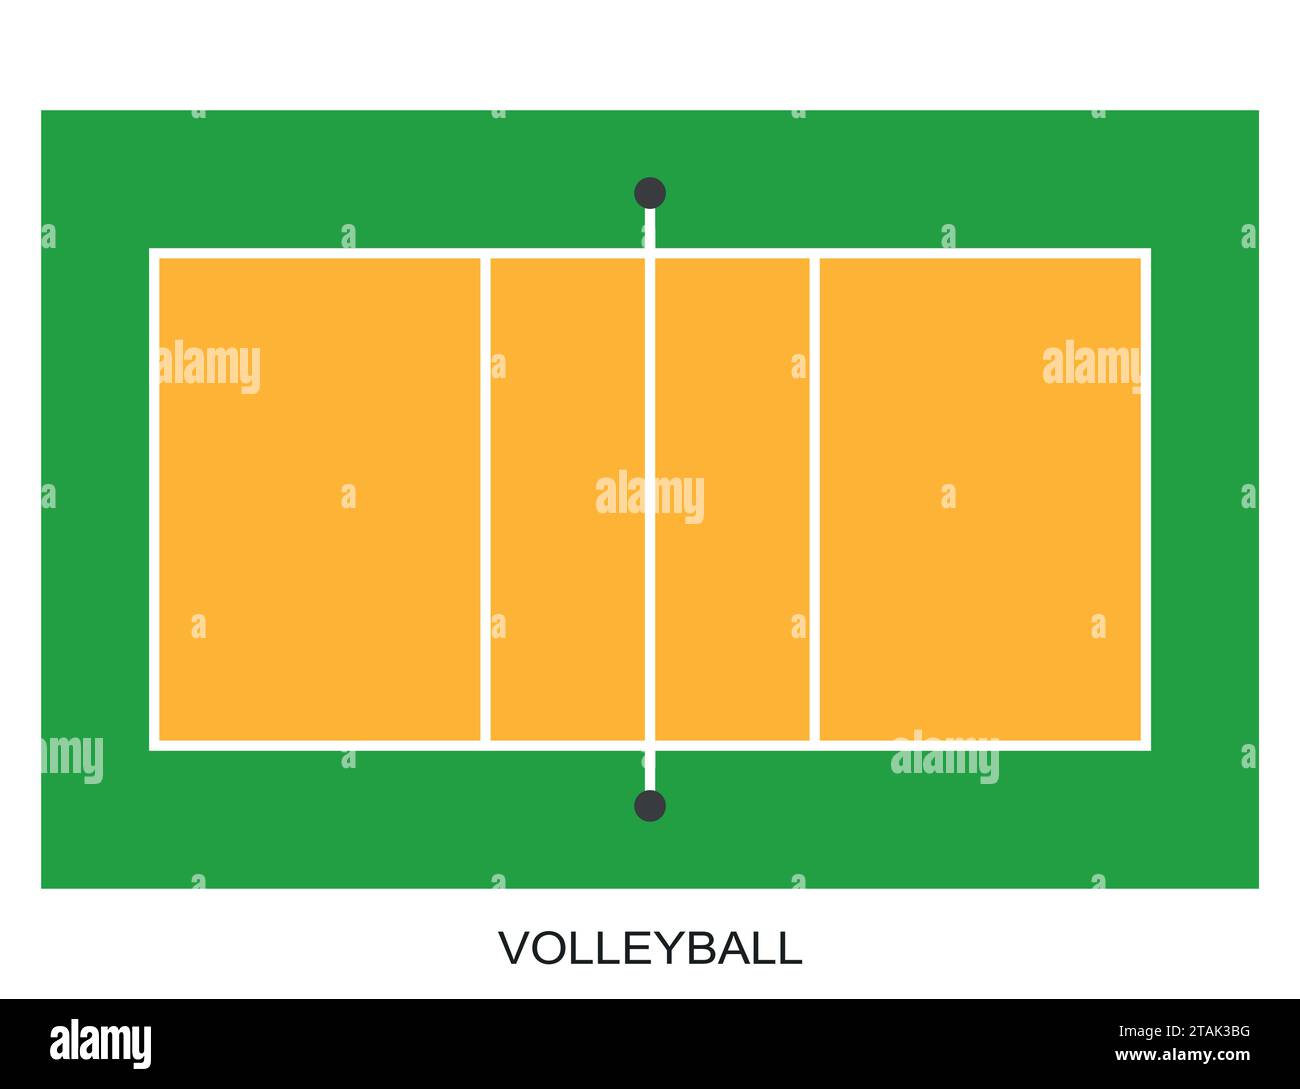 Indoor Volleyball Court Diagram | Anthem Sports